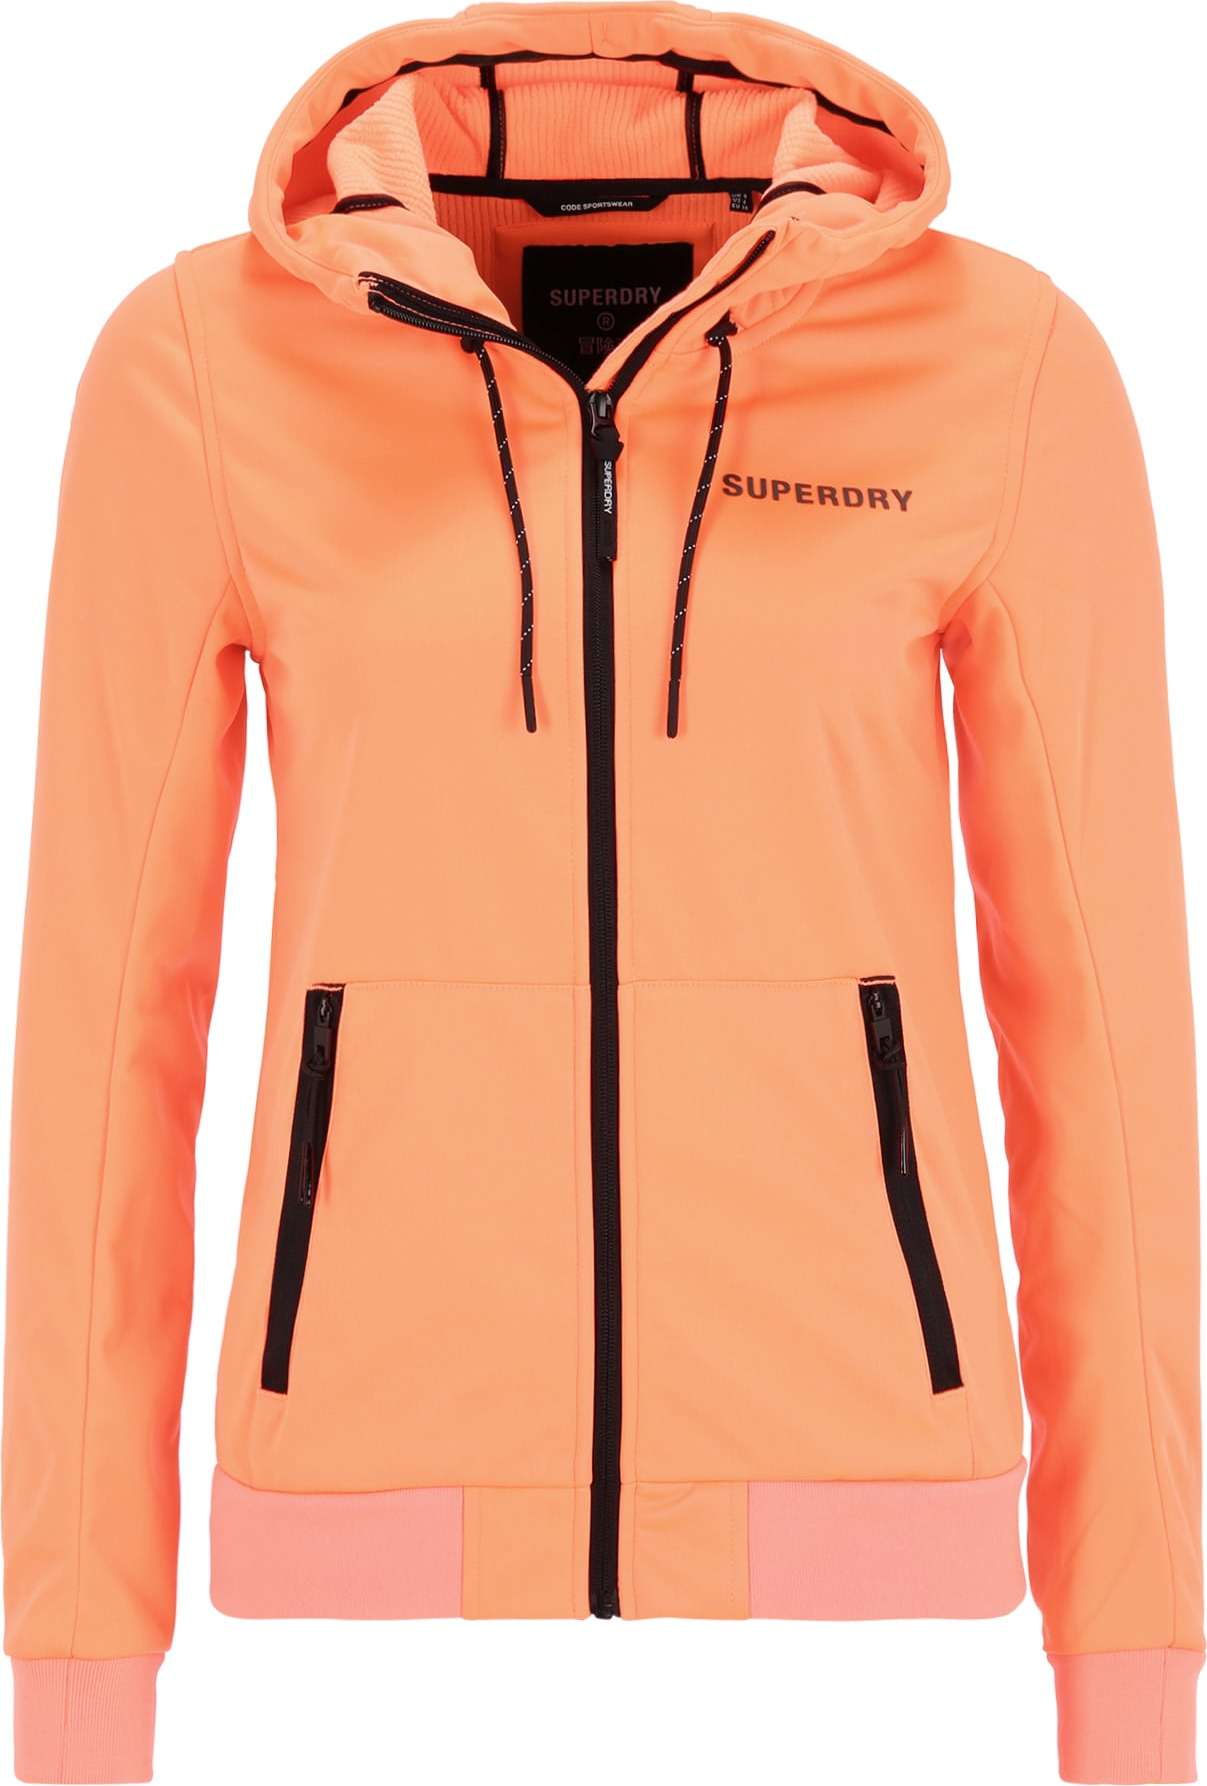 Superdry Outdoorová bunda oranžová / černá